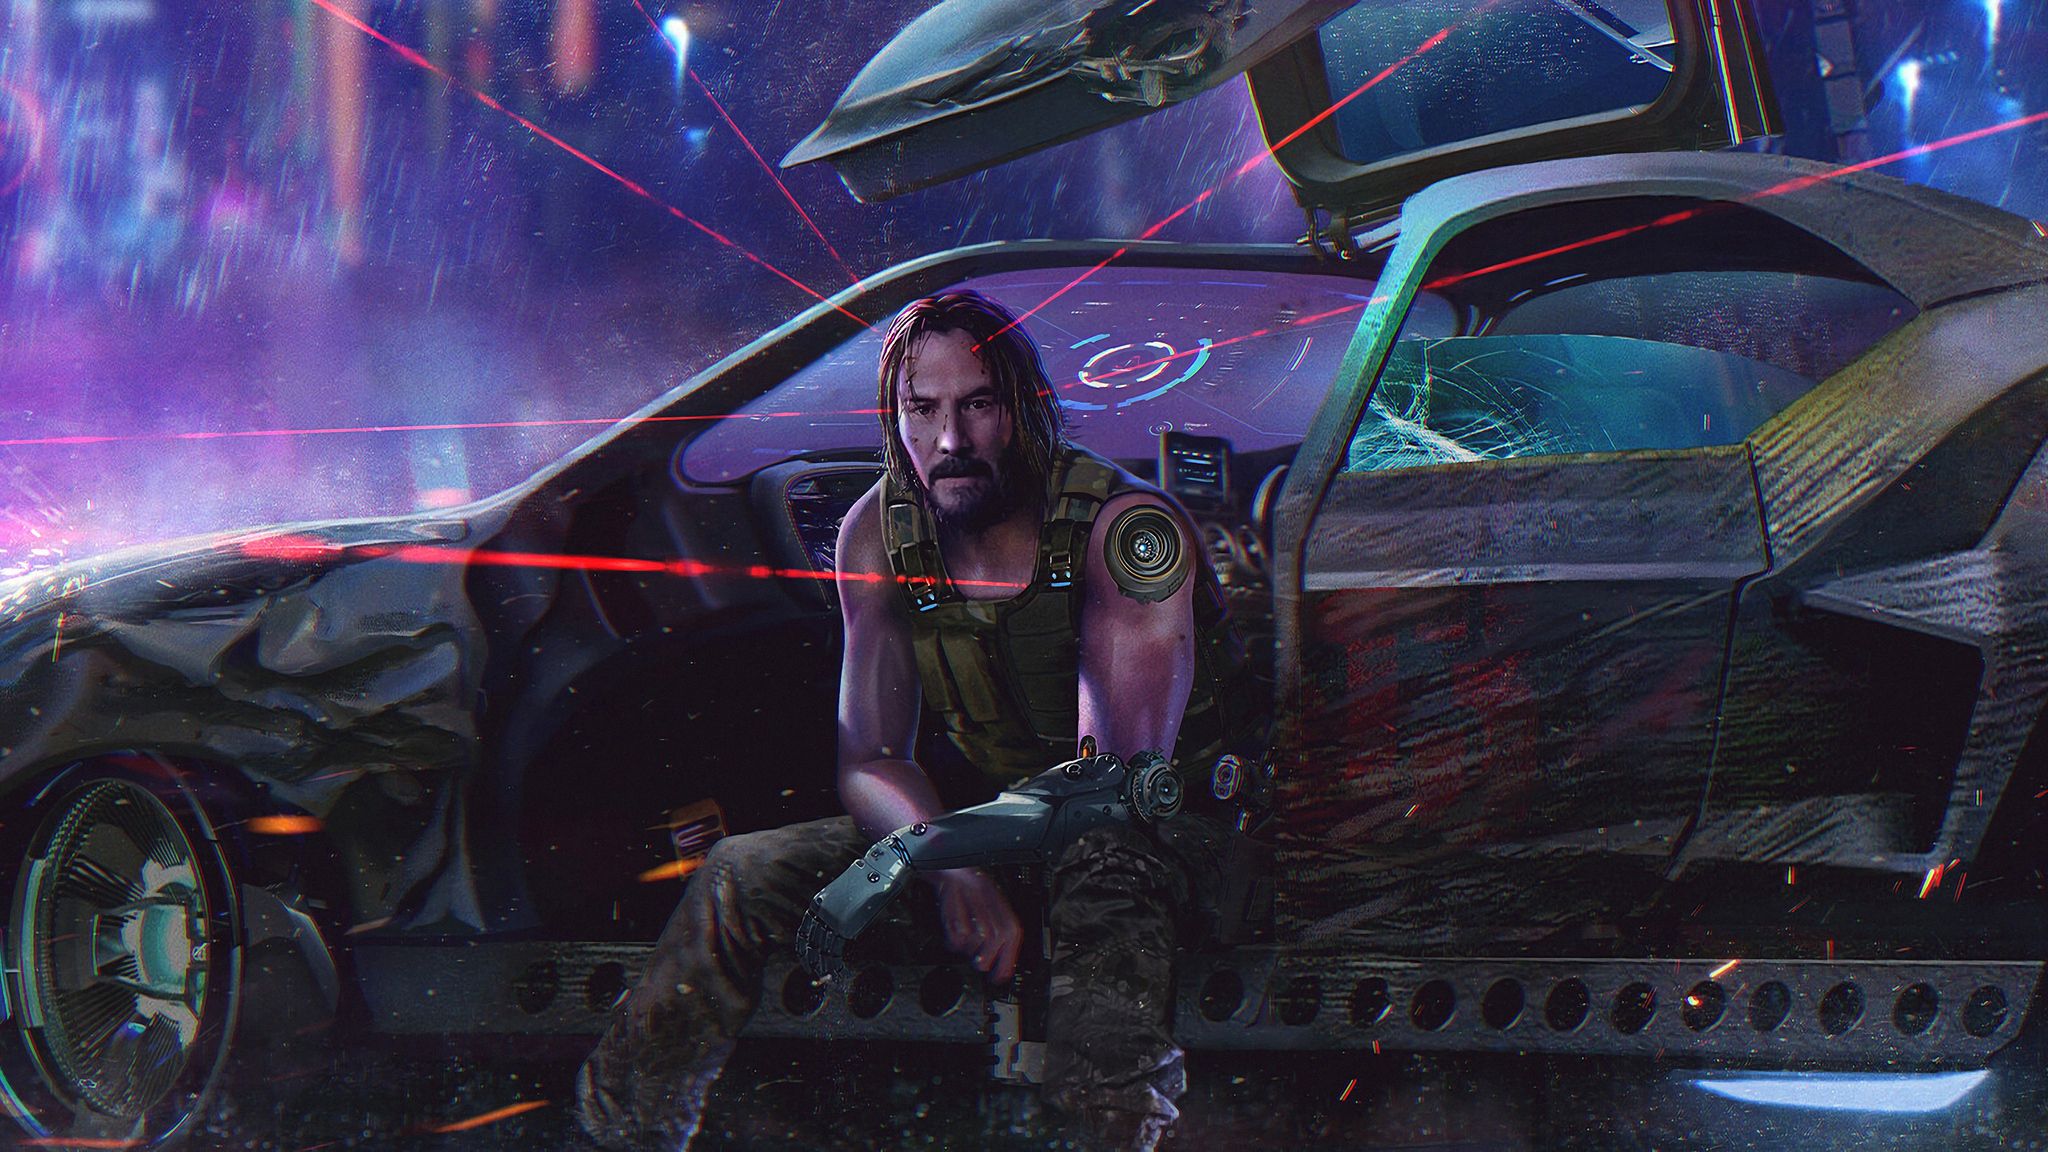 Cyberpunk 2077 Keanu Reeves 4k 2048x1152 Resolution HD